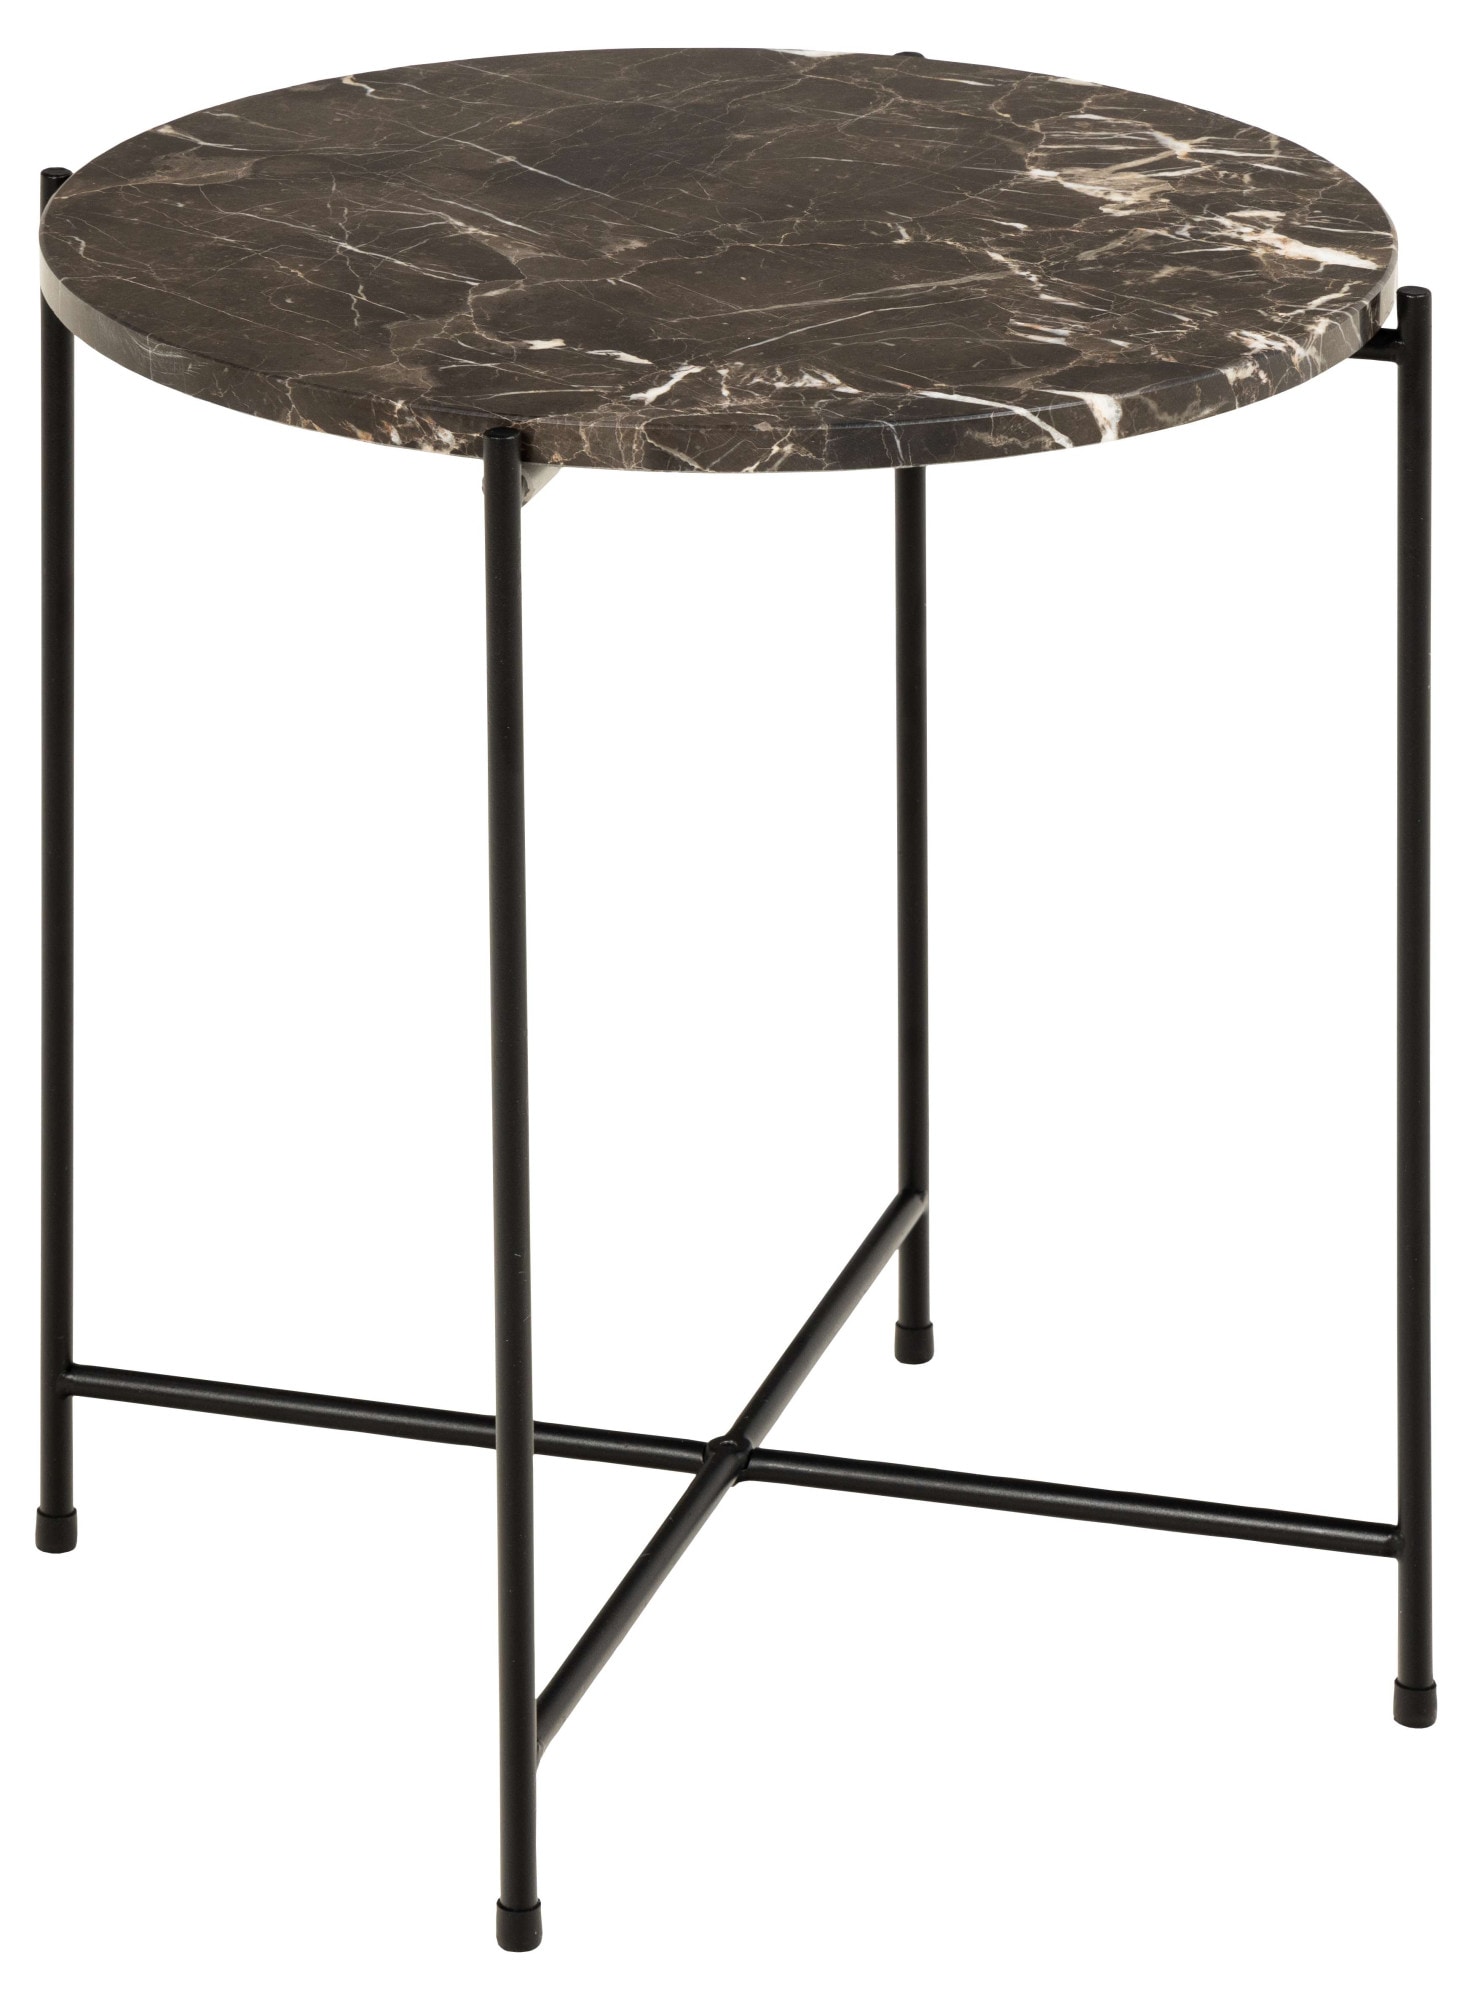 Beistelltisch »Avila«, Ecktisch, rund, Tischplatte aus Marmorstein, T: 52 cm